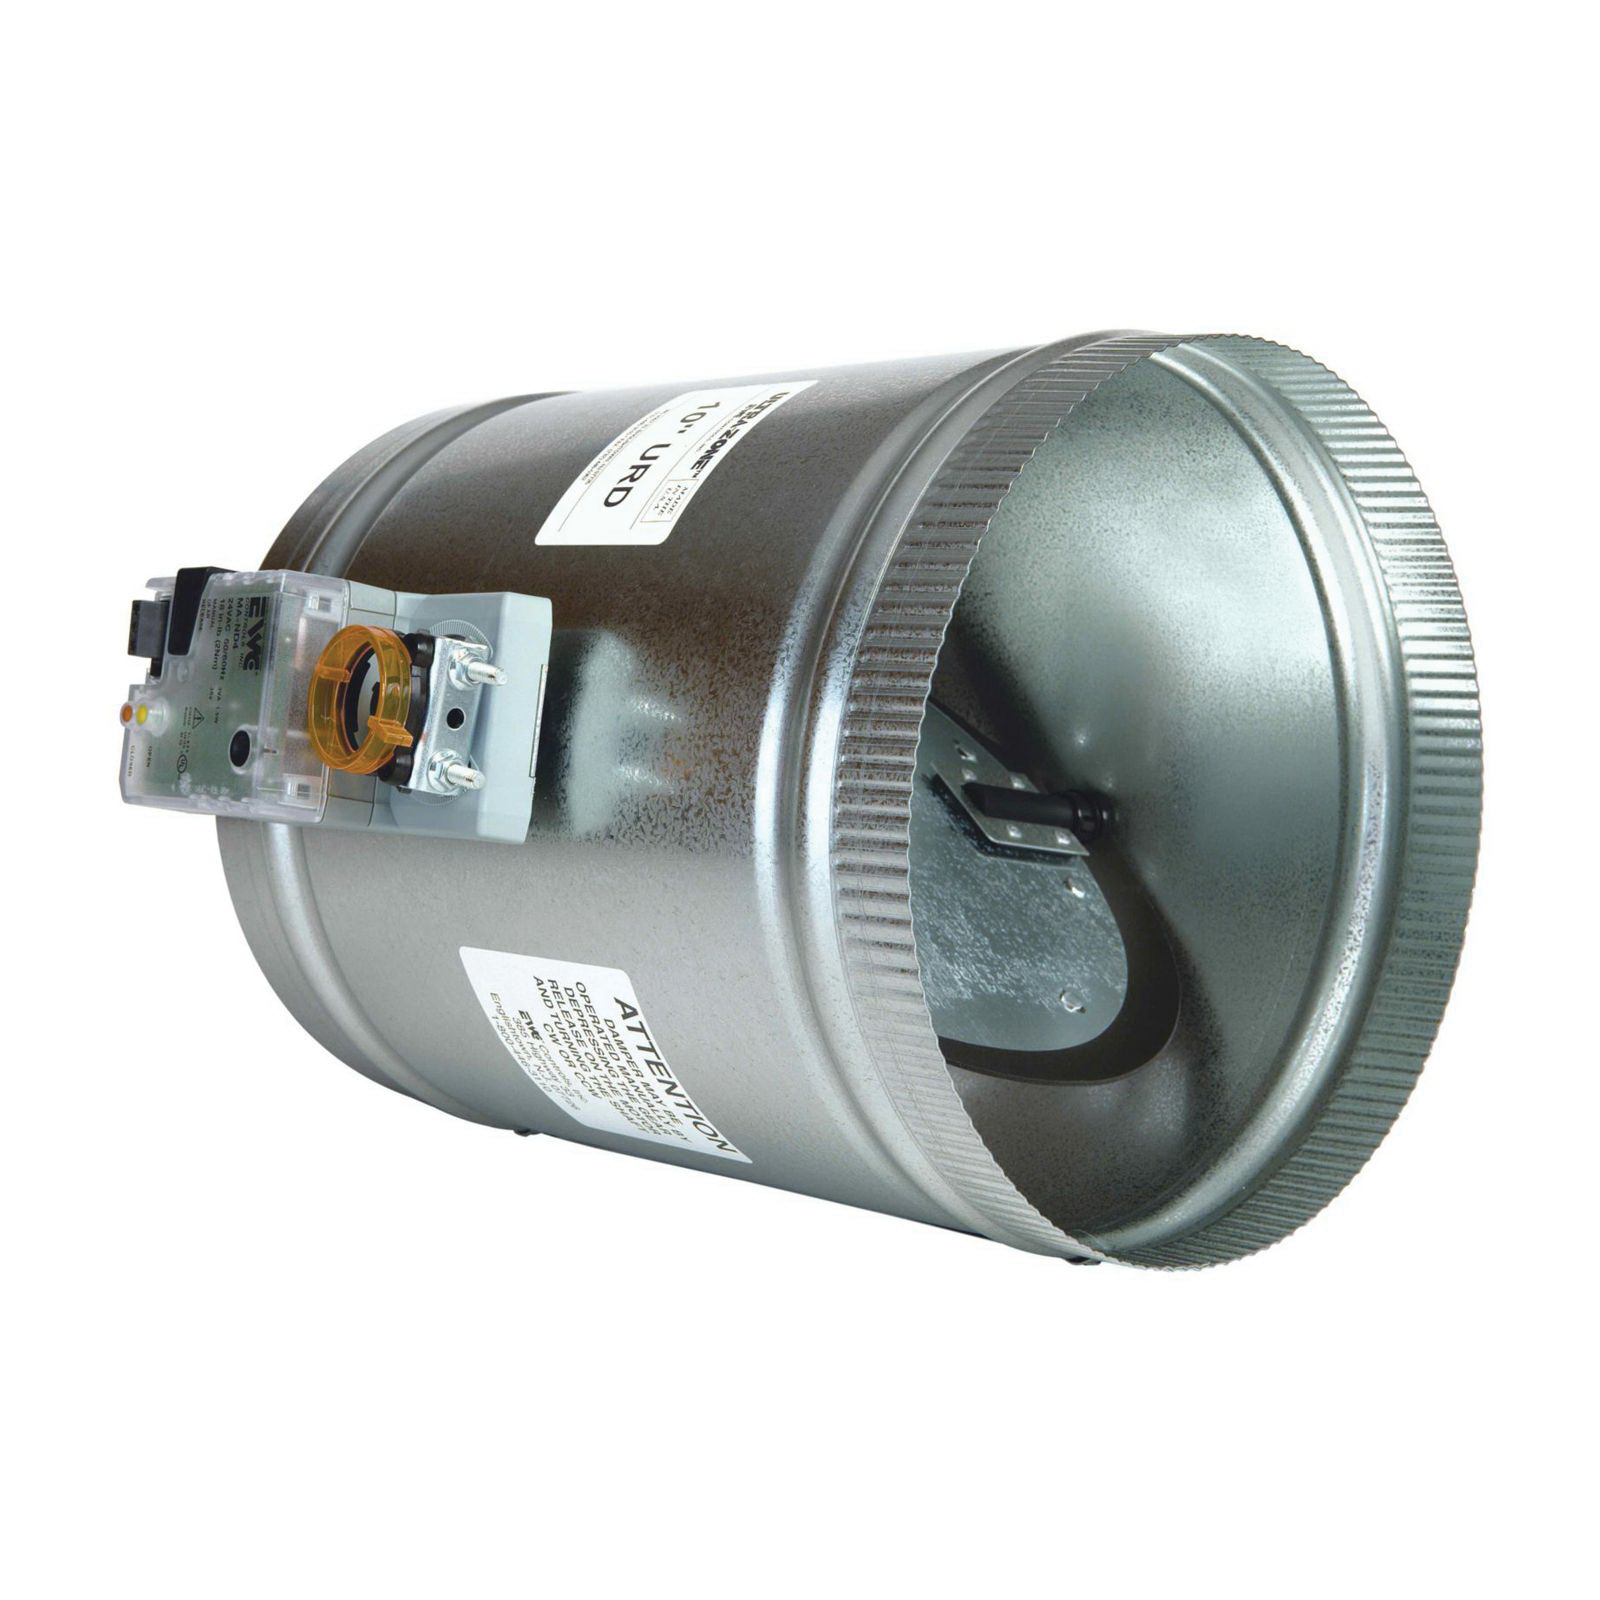 EWC® Ultra-Zone URD-18 Zone Damper With MA-ND5 Actuator, Round, 24 VAC, 1.5 A, 18 in-lb